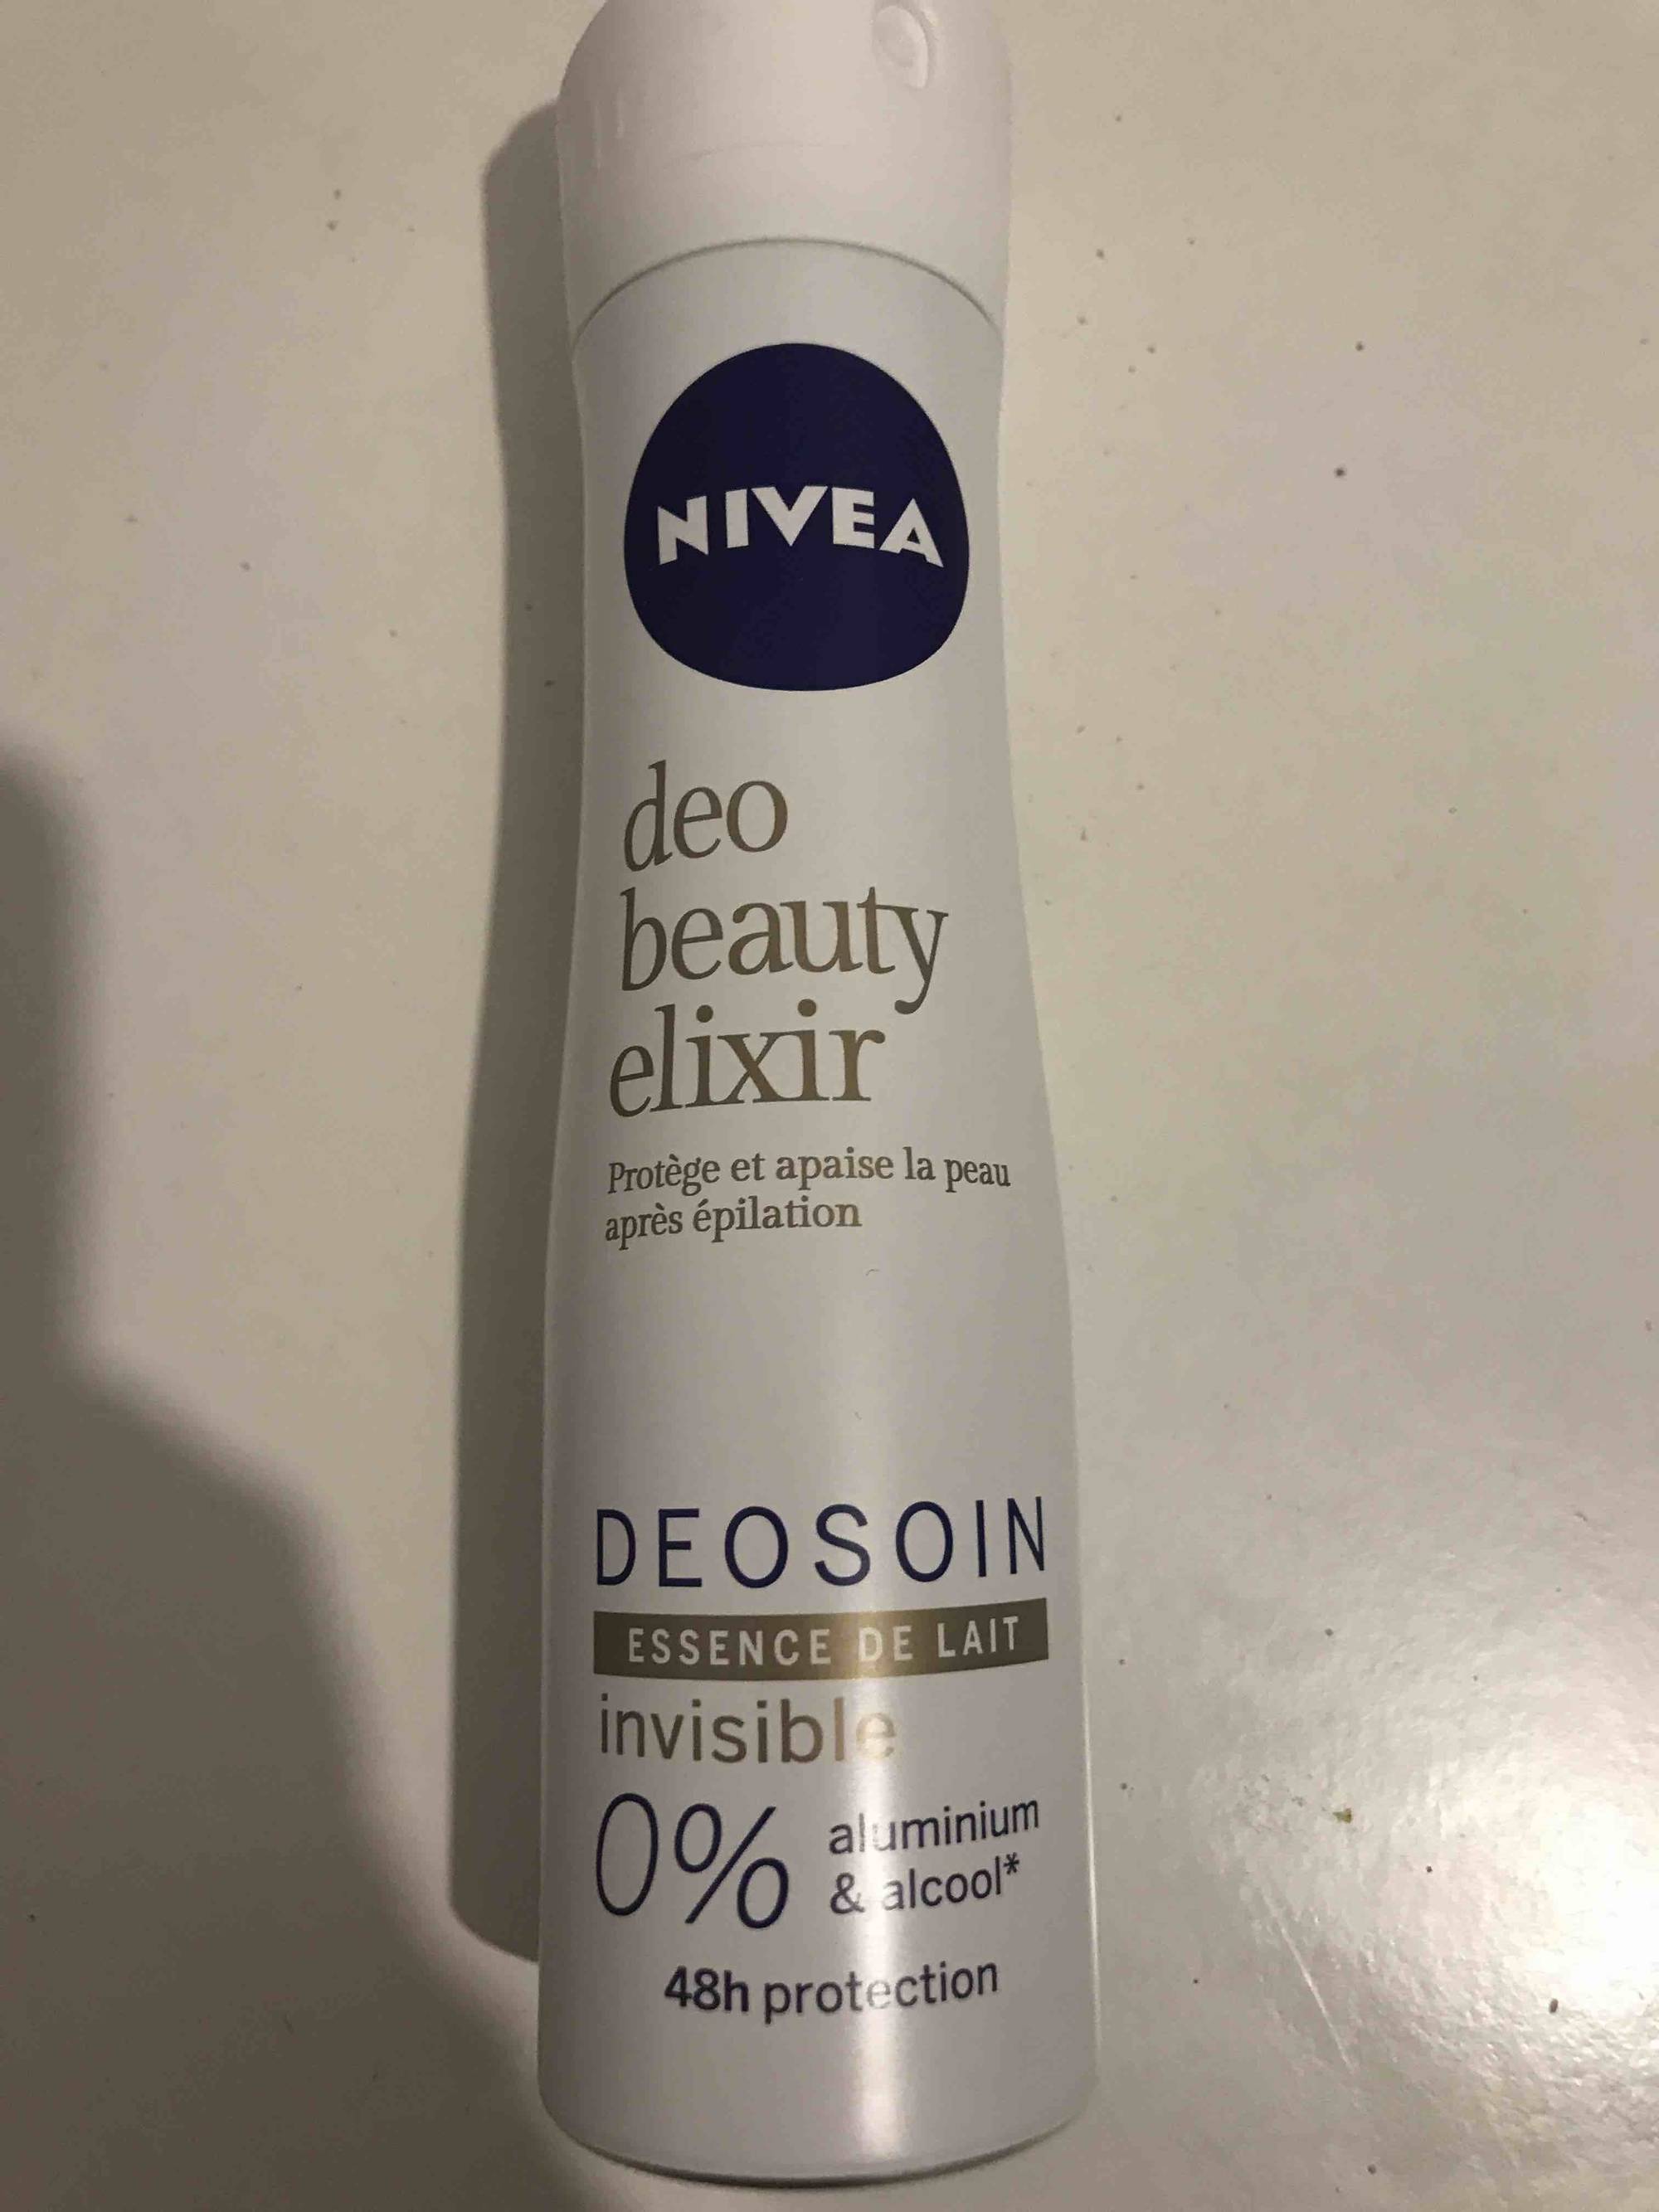 NIVEA - Deo beauty elixir - Essence de lait